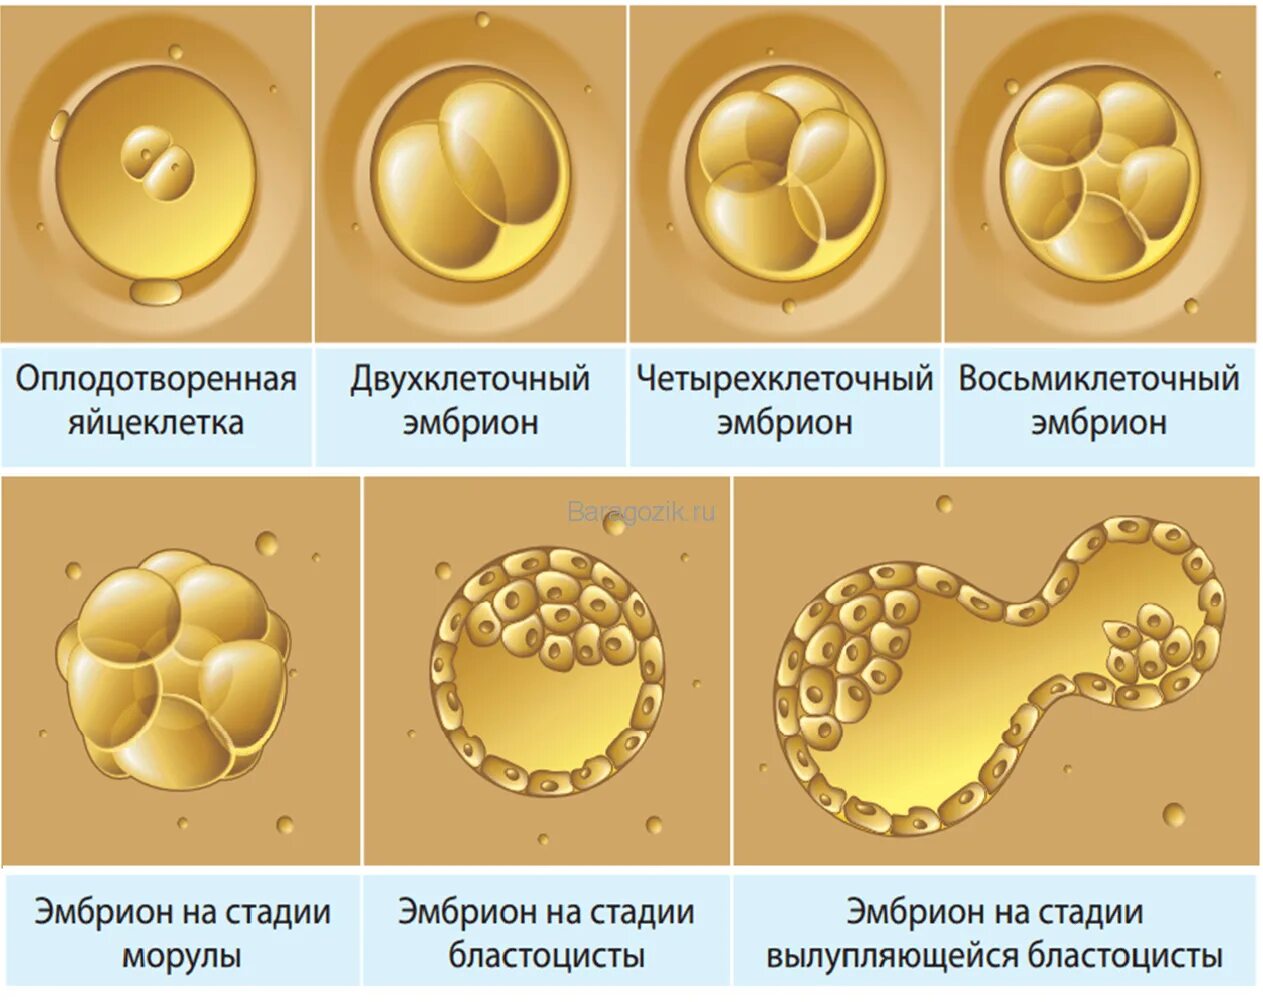 Чем оплодотворение отличается от. Эко эмбрион морула. Стадии развития оплодотворенной яйцеклетки. Этапы развития оплодотворенной яйцеклетки по дням. Эко стадии развития эмбриона.